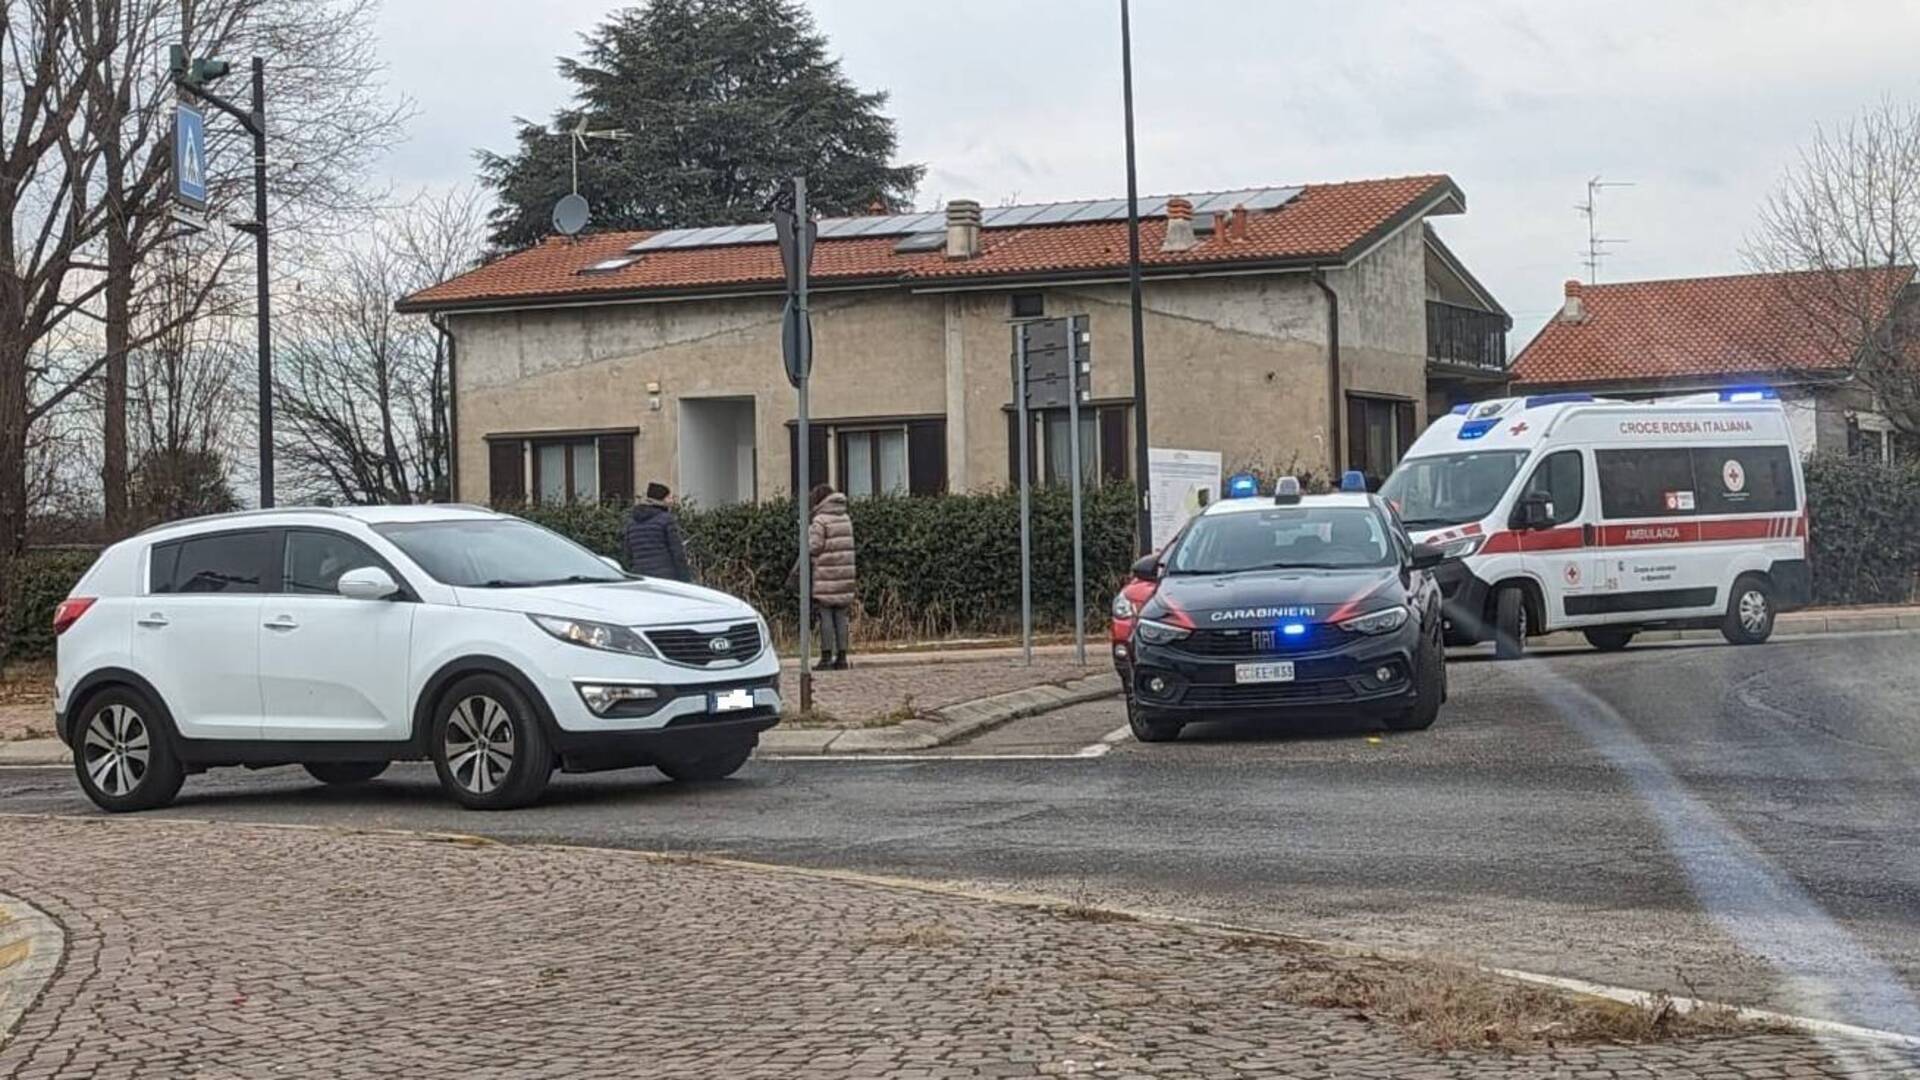 Saronno-Monza scontro alla rotonda: 4 persone soccorse a Solaro